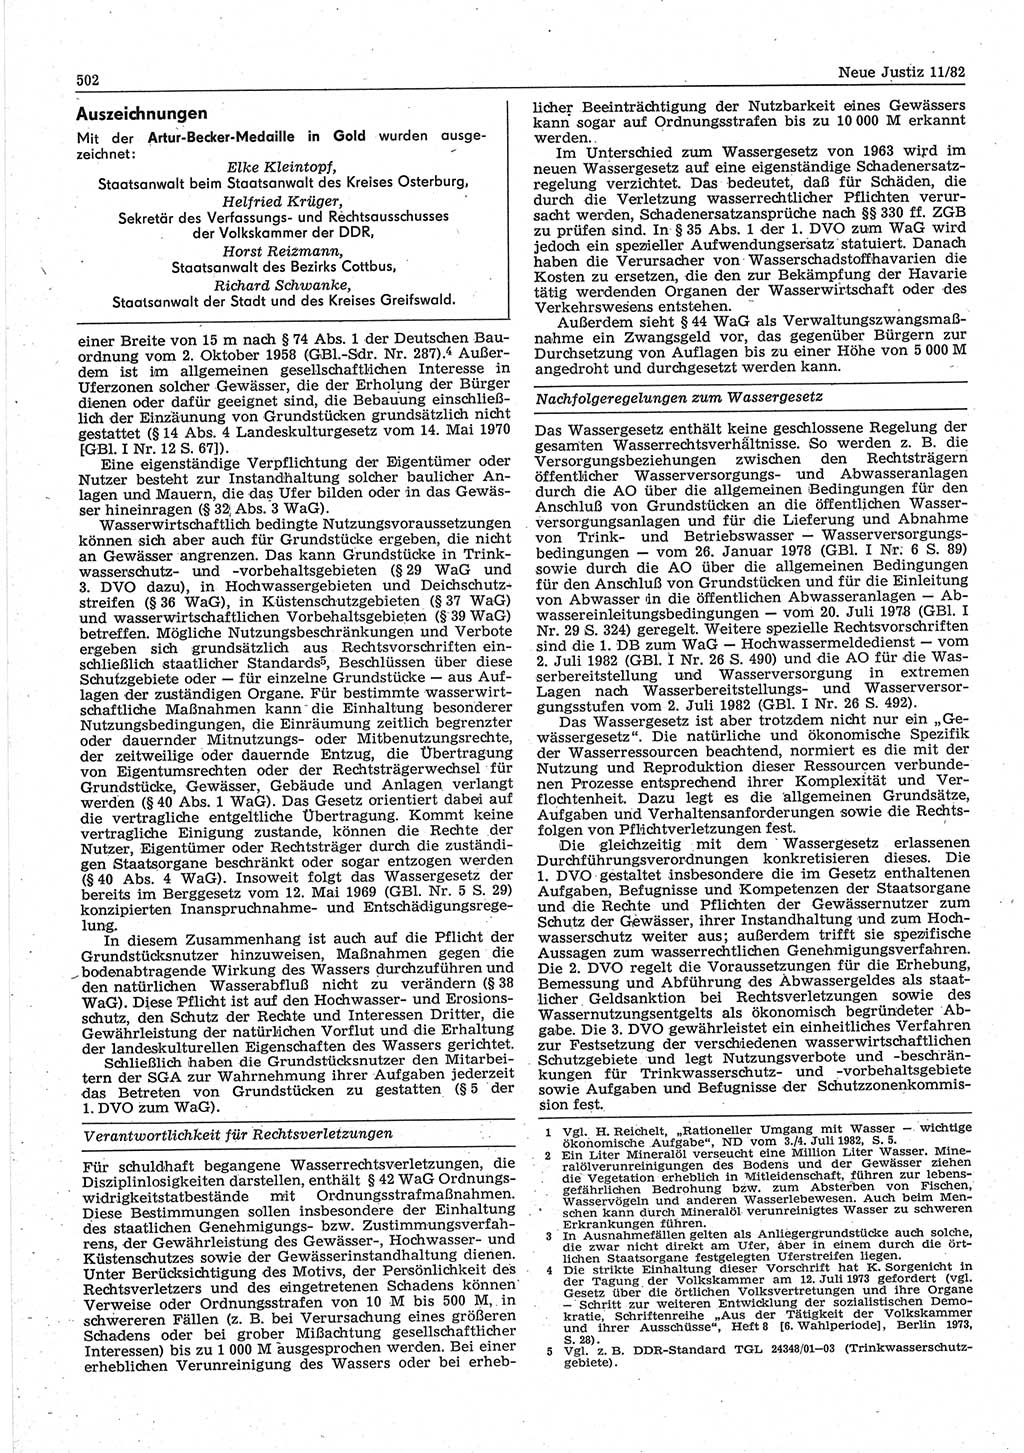 Neue Justiz (NJ), Zeitschrift für sozialistisches Recht und Gesetzlichkeit [Deutsche Demokratische Republik (DDR)], 36. Jahrgang 1982, Seite 502 (NJ DDR 1982, S. 502)